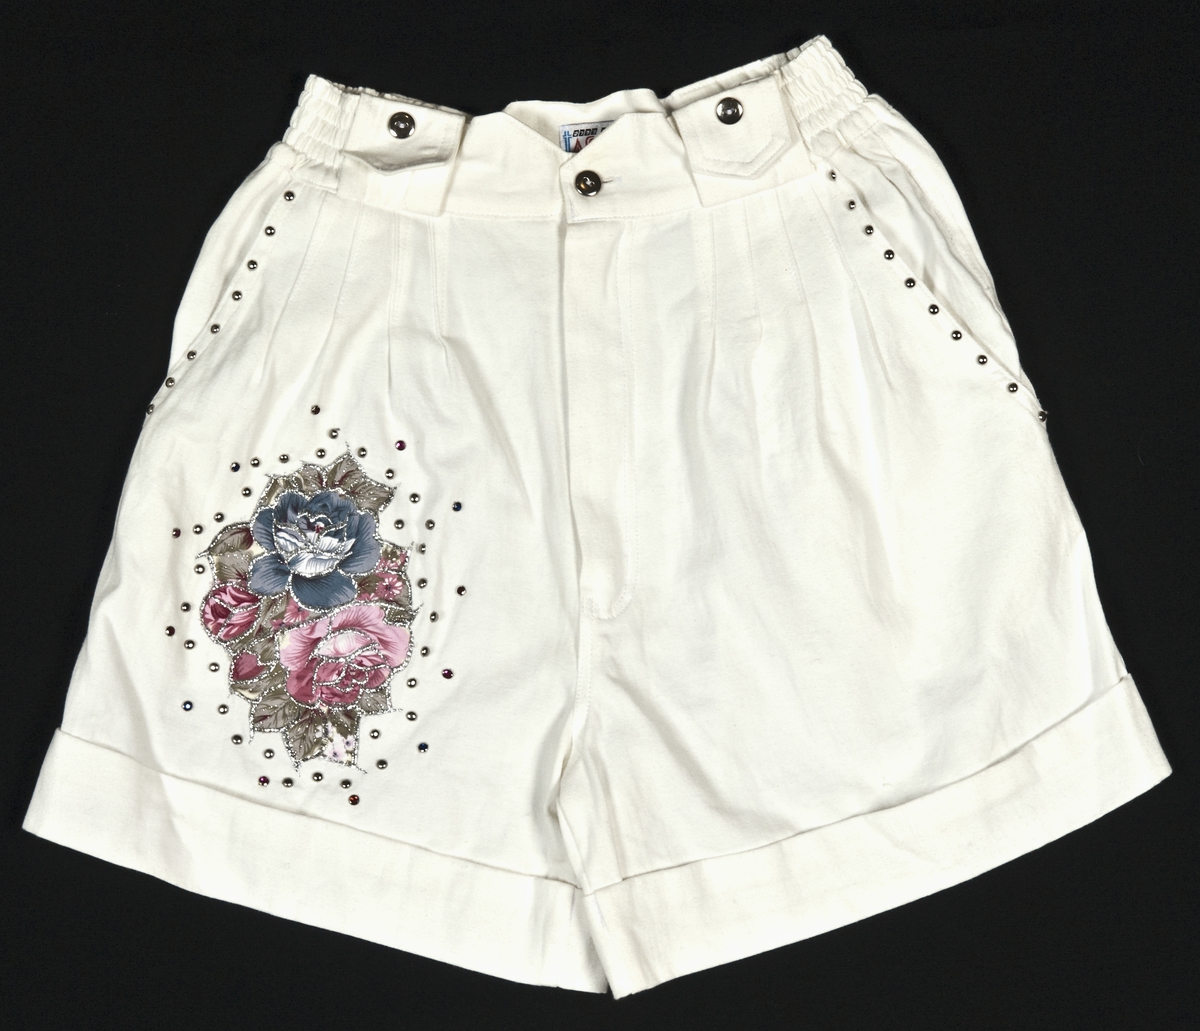 Hvit jakke i bomull med dekor av kuler og fargestener med applikerte felt av blomstermønstret tekstil med glitter på. Tilhørende shorts med samme farger og dekor. 